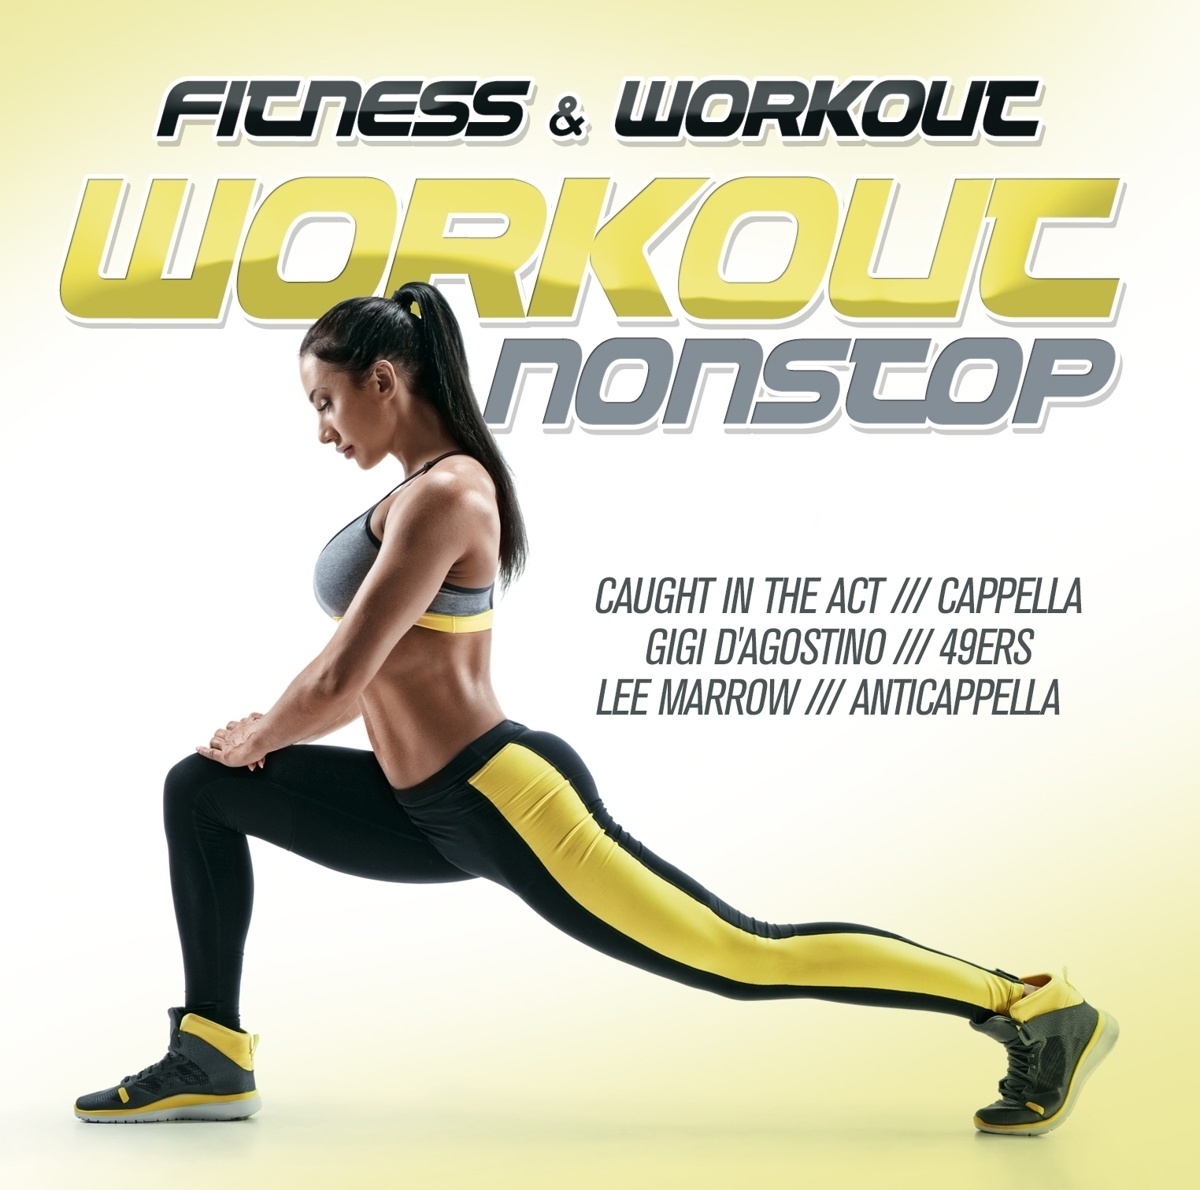 Fitness & Workout: Workout Nonstop - Fitness & Workout Mix. (CD)